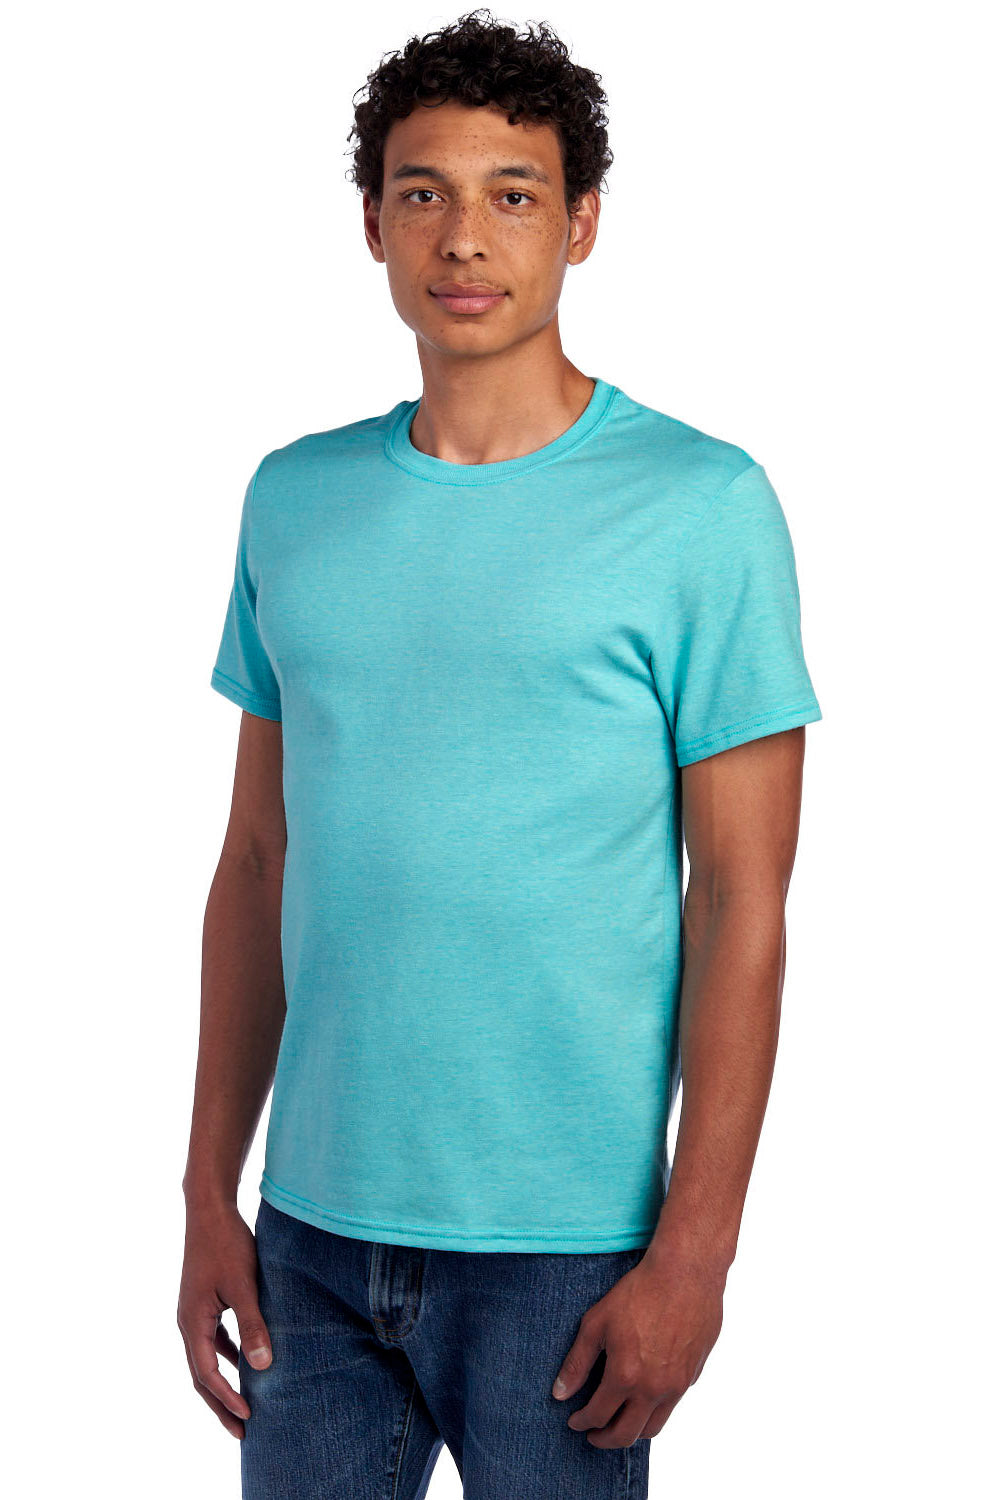 Jerzees 560MR/560M Mens Premium Blend Short Sleeve Crewneck T-Shirt Heather Aqua 3Q